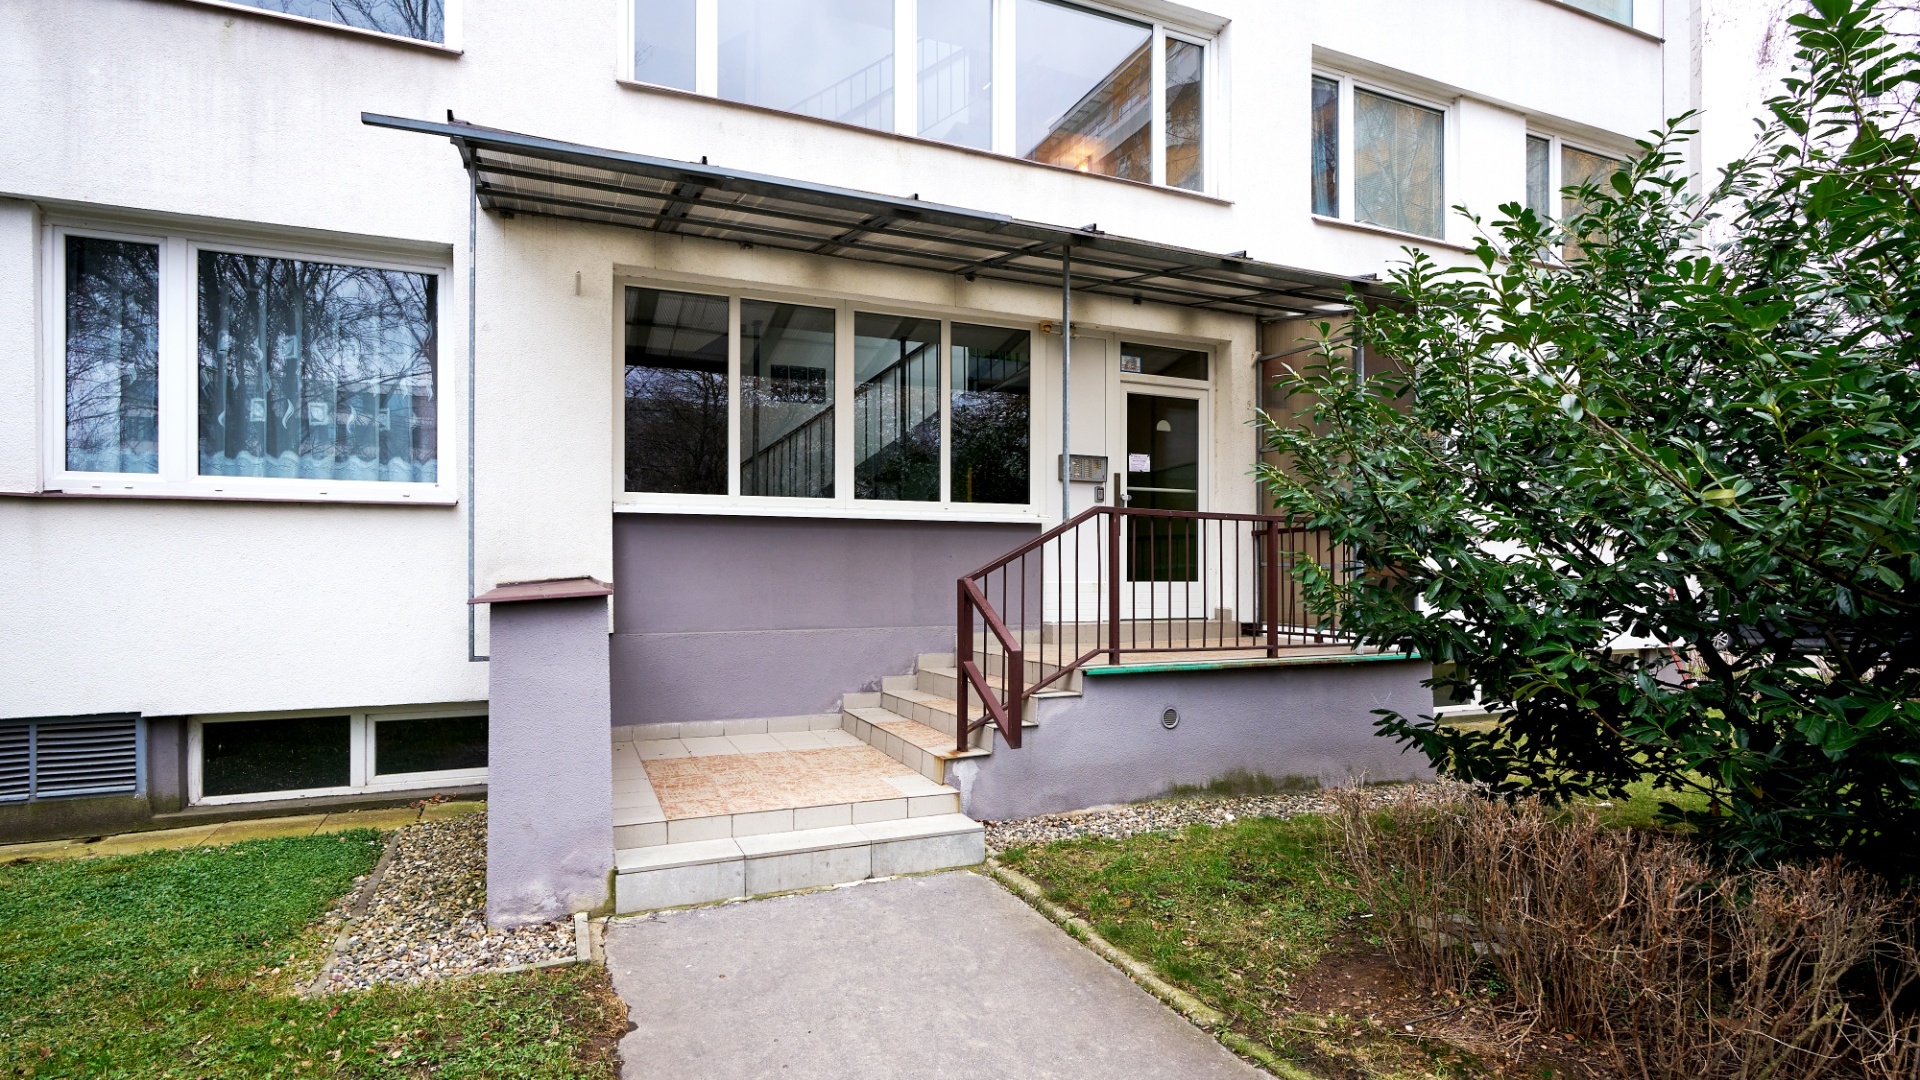 Pronájem bytu 2+kk s komorou na patře, 45 m², Praha 9 - Prosek, ulice Pískovcová